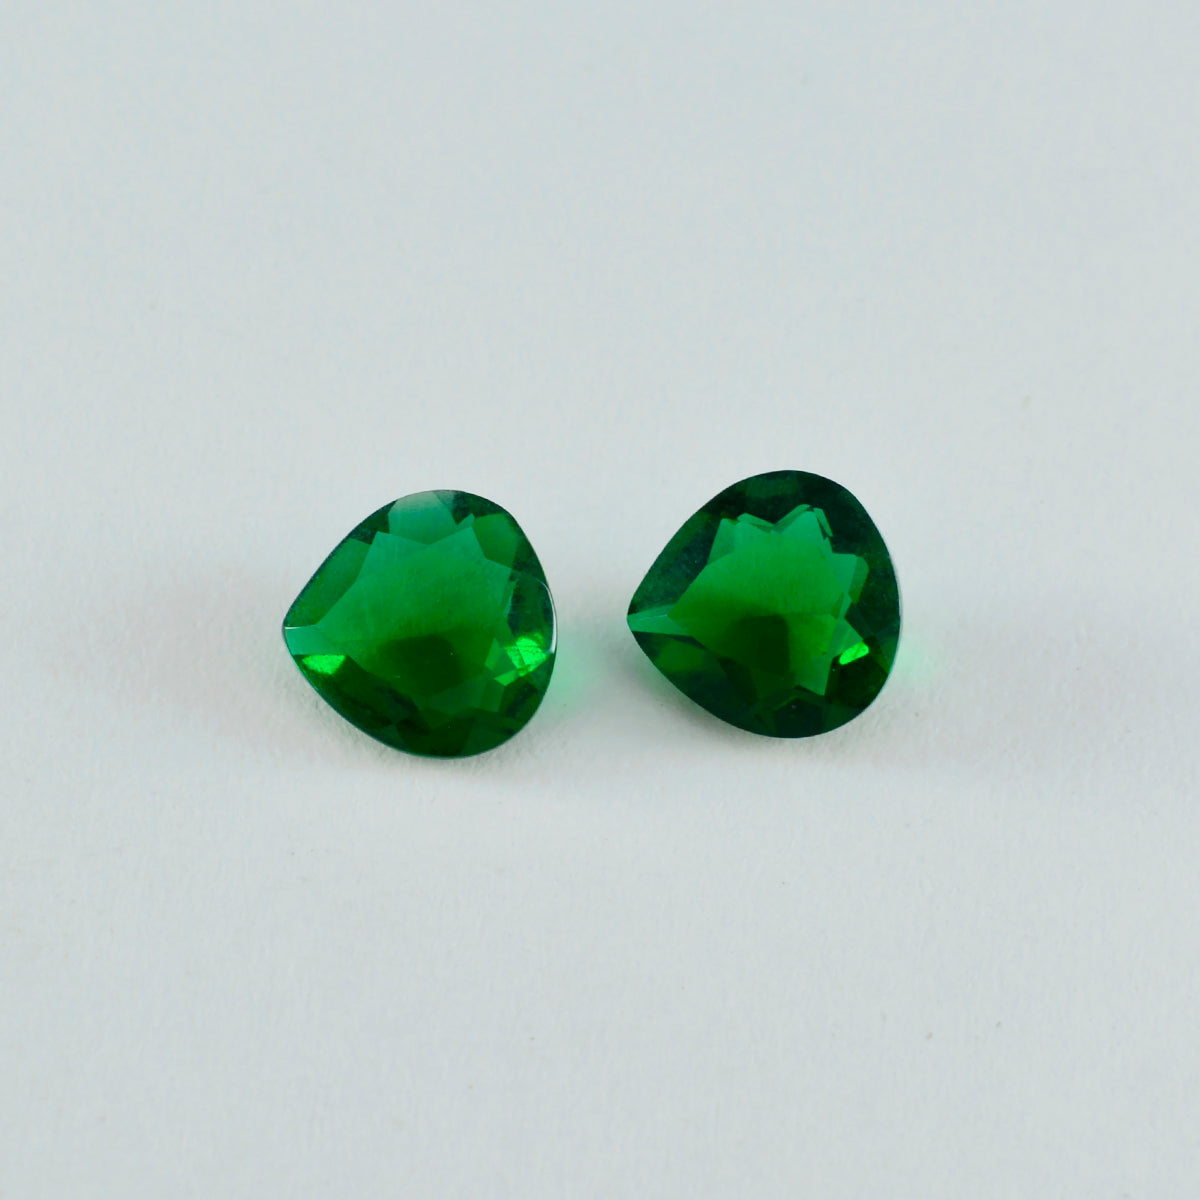 Riyogems 1 Stück grüner Smaragd, CZ, facettiert, 7 x 7 mm, Herzform, wunderschöne Qualitätsedelsteine